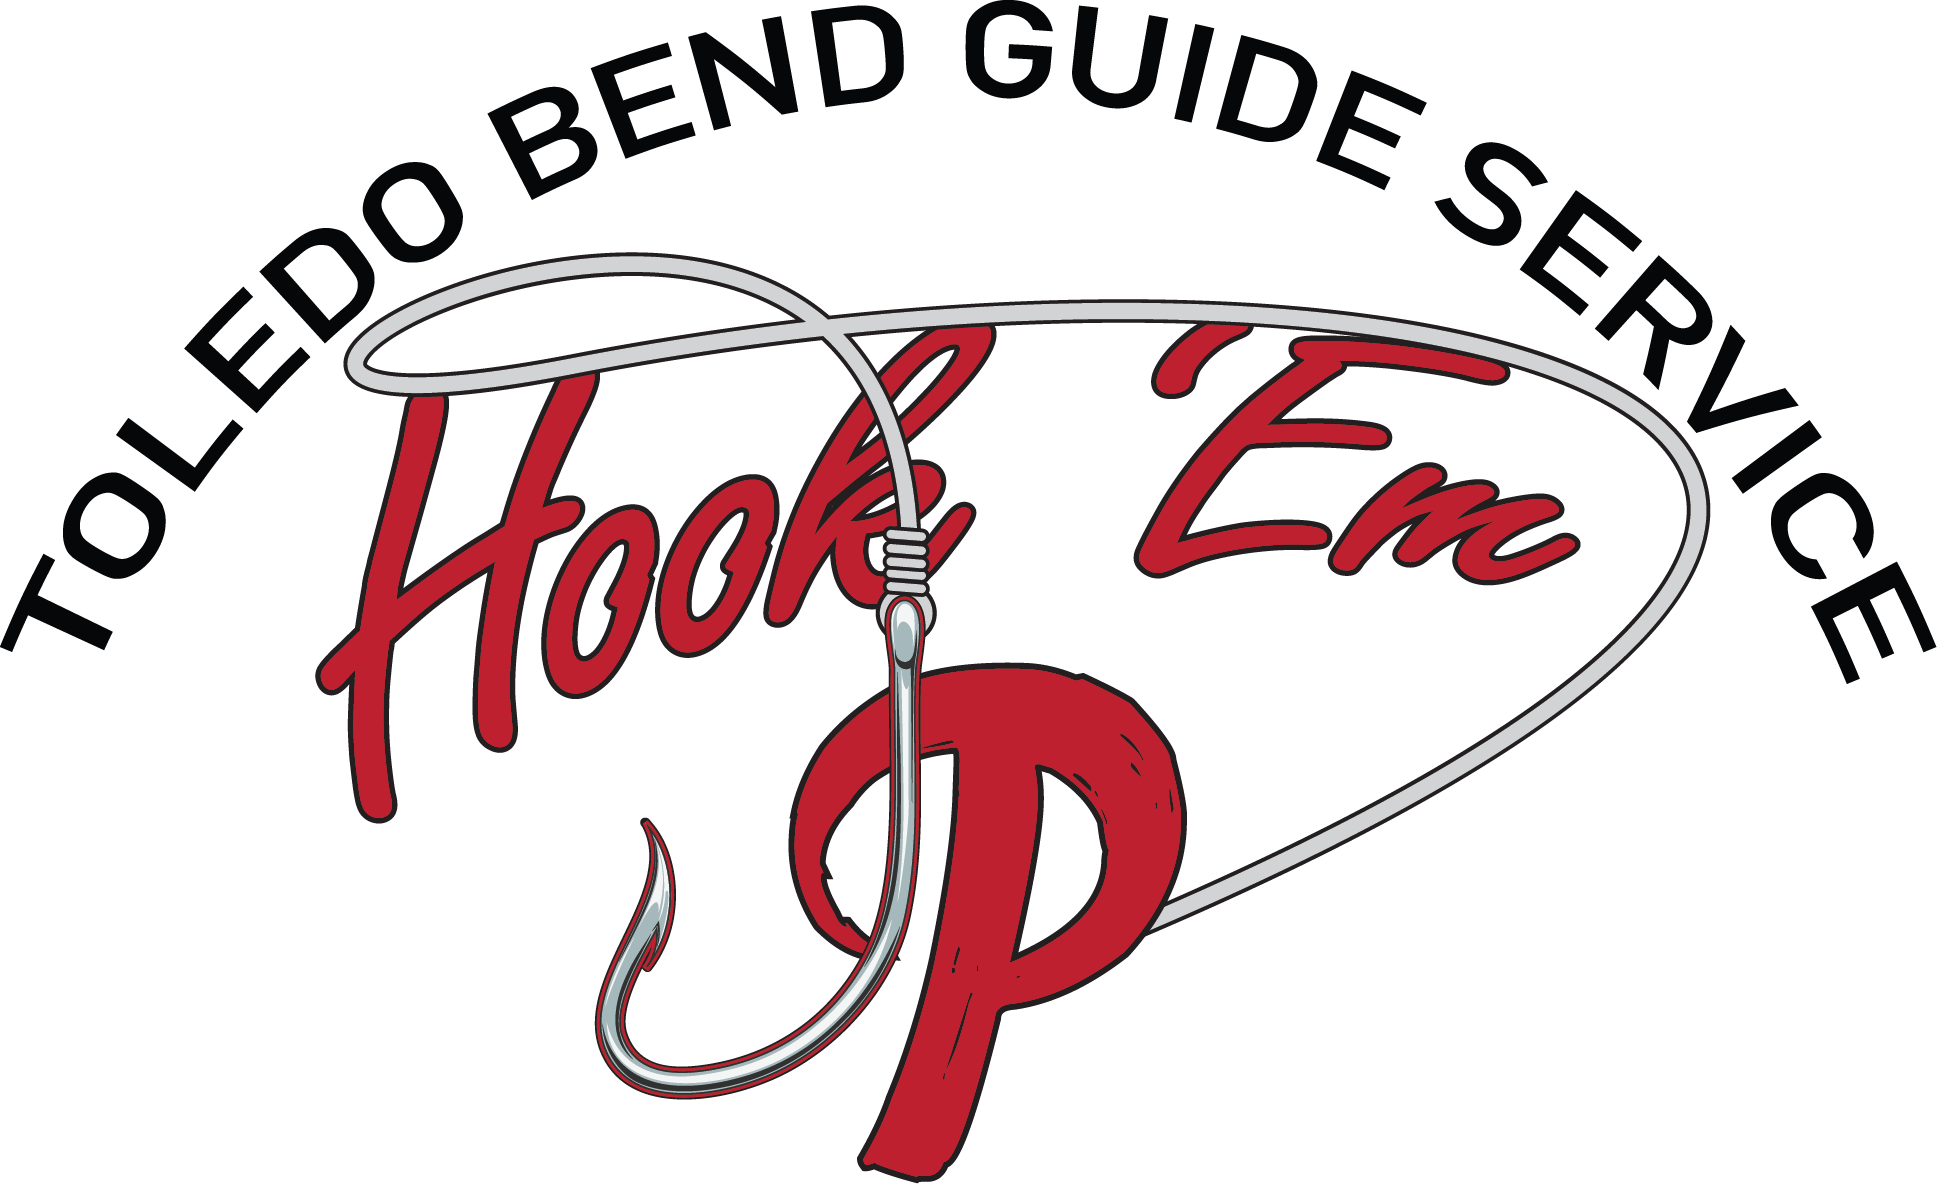 Toledo Bend Guide Service – Hook em Up